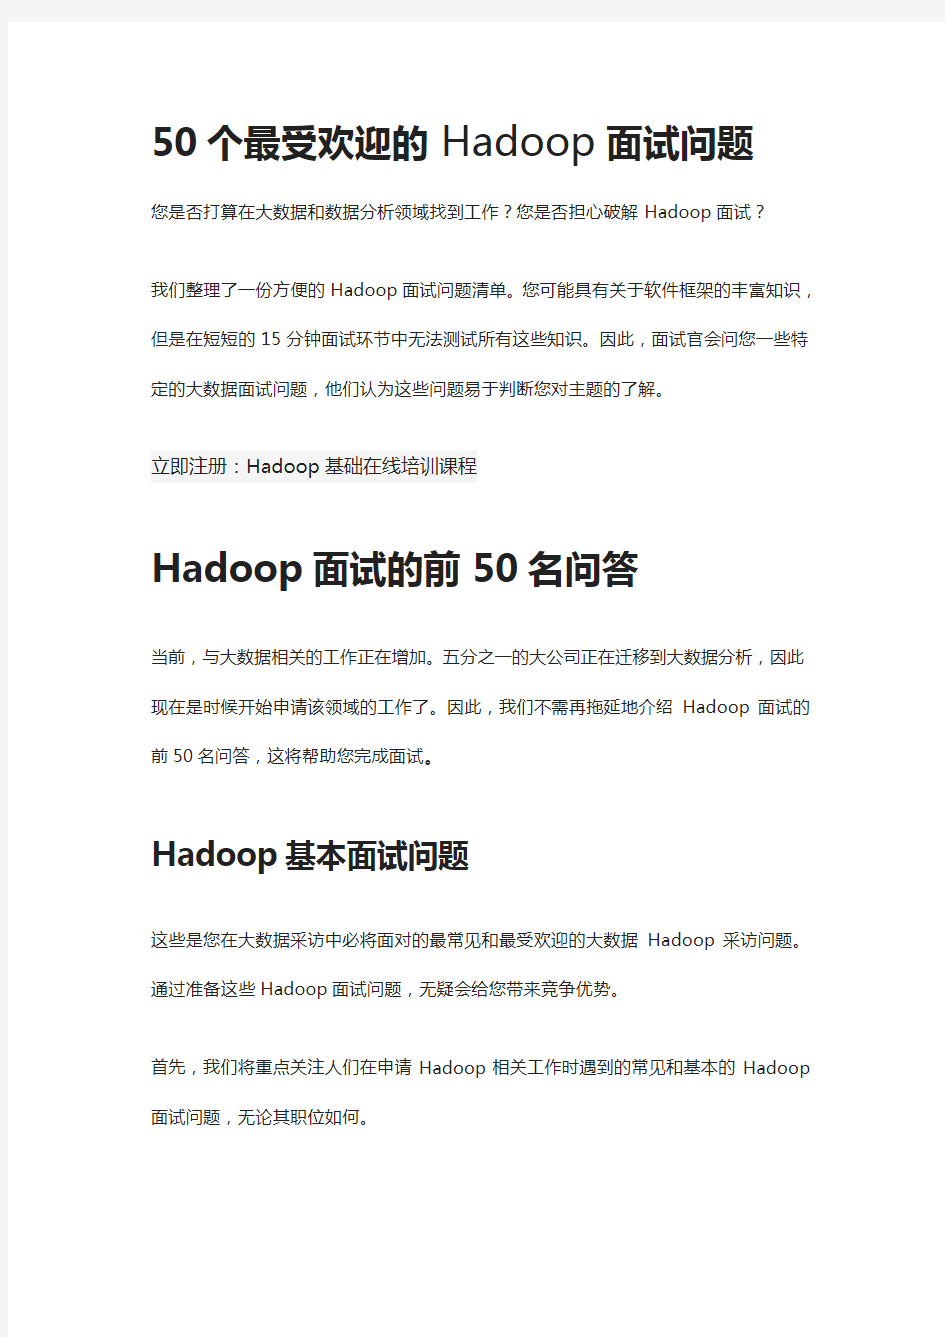 面试必过——50个最受欢迎的Hadoop面试问题